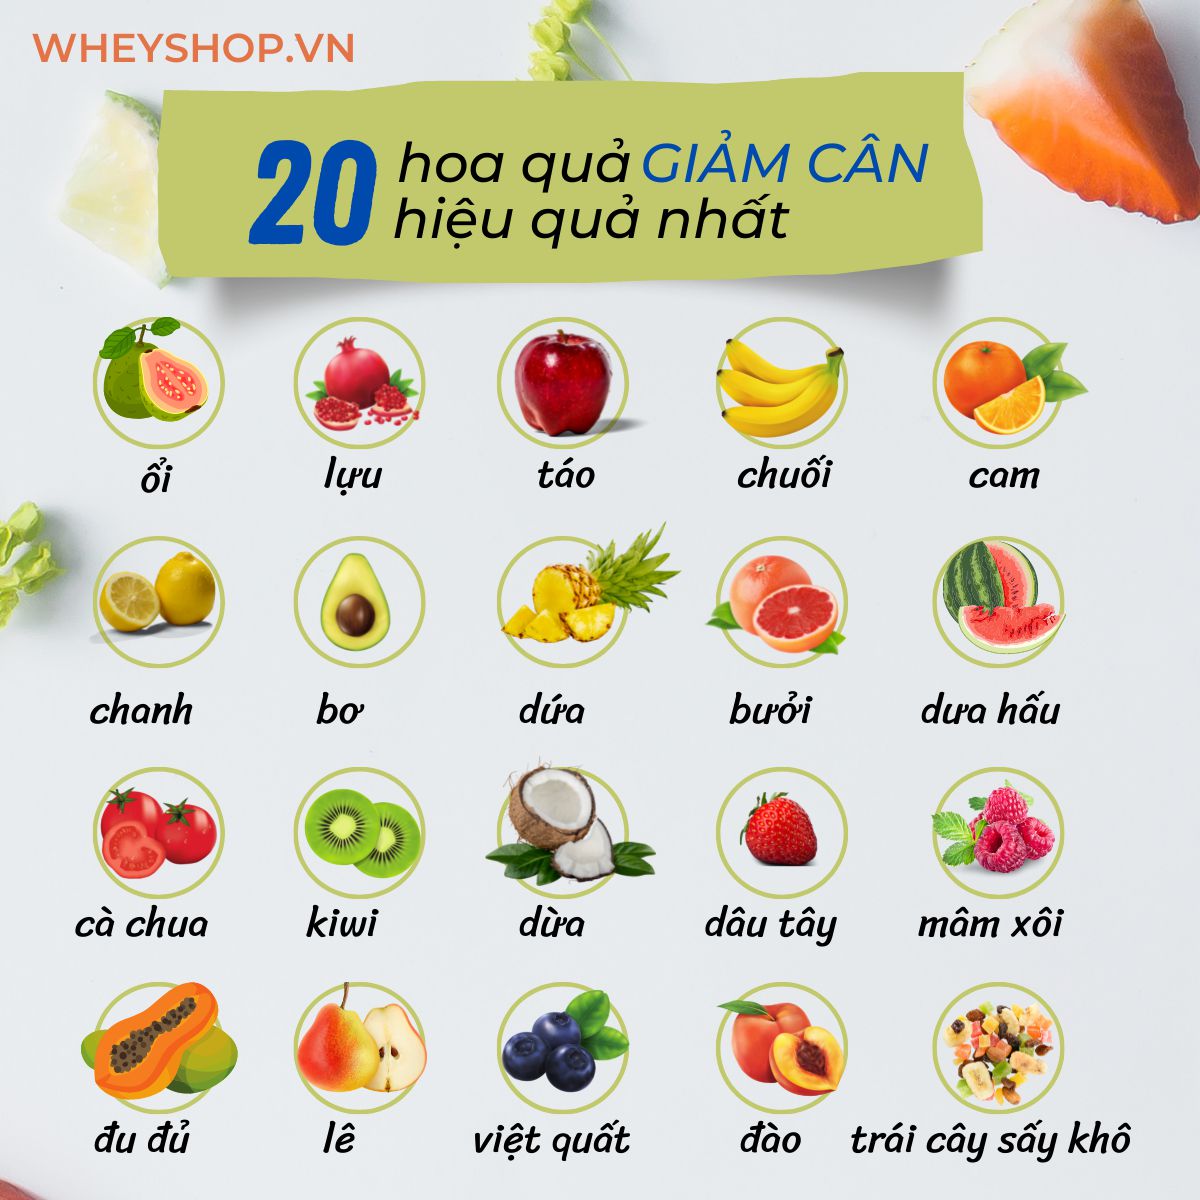 Nếu bạn đang phân vân trong việc sử dụng hoa quả giảm cân hiệu quả không thì hãy cùng WheyShop tìm hiểu ngay 20 loại hoa quả giảm cân qua...